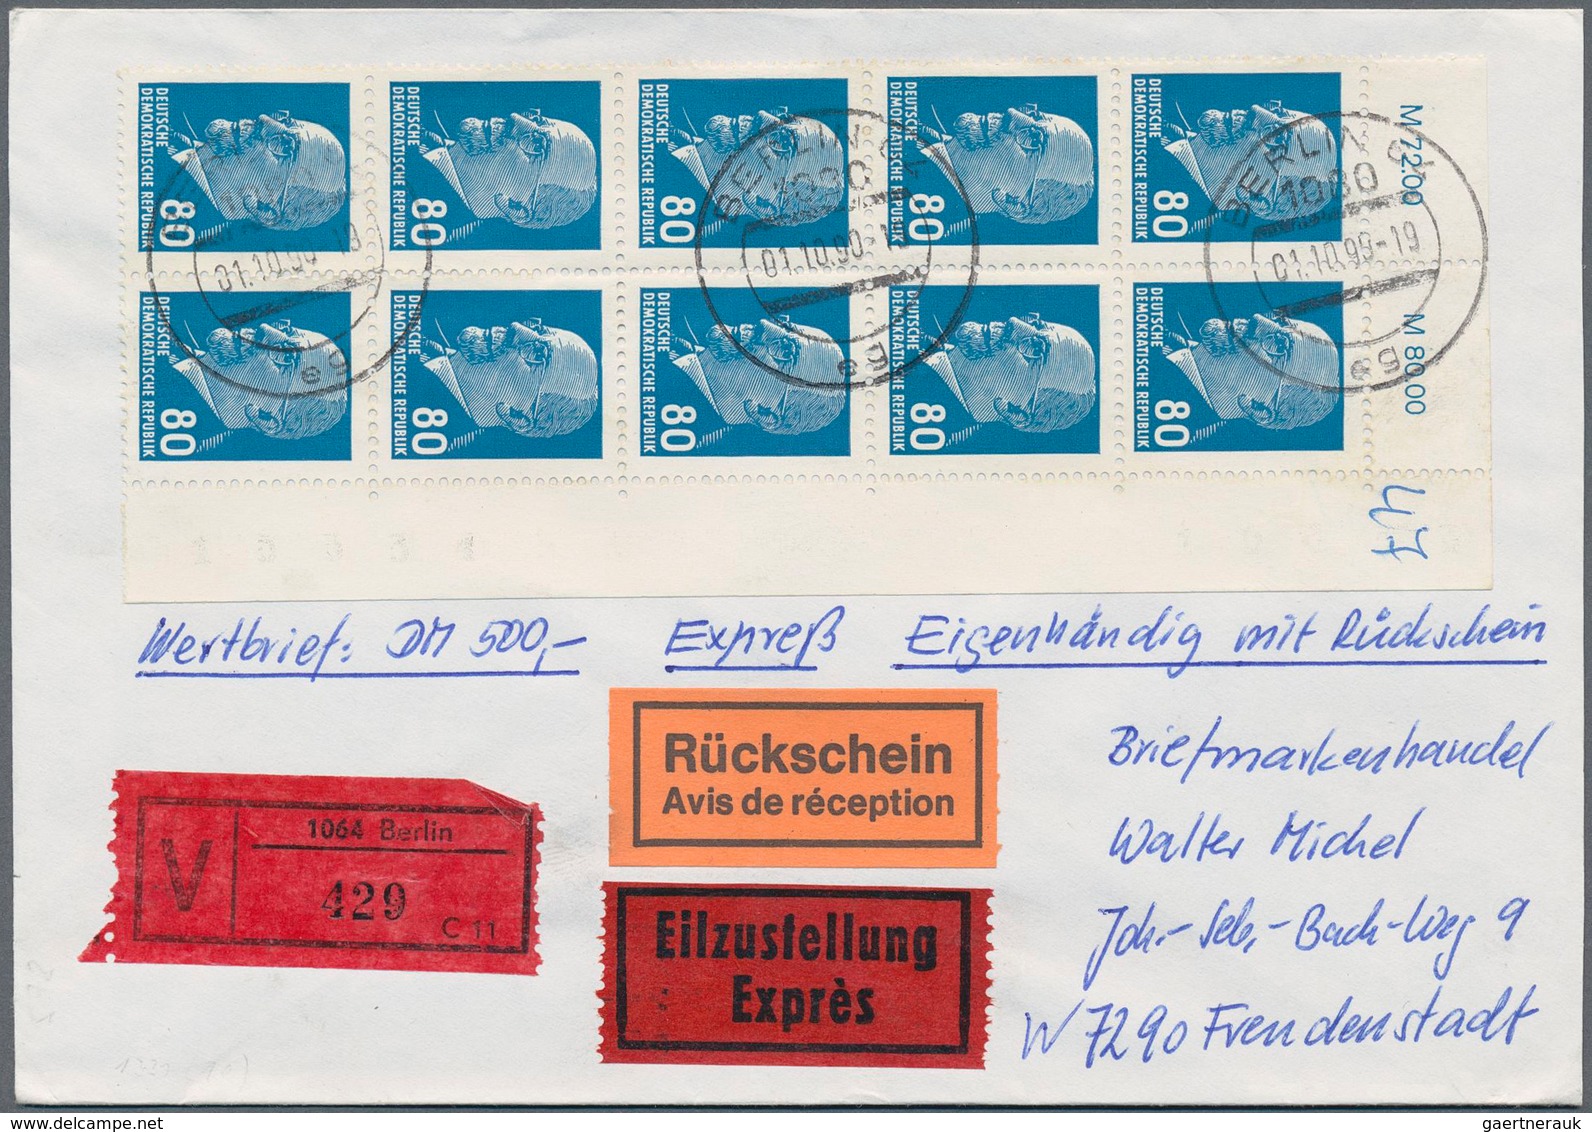 32355 DDR: 1957/1990, Freimarken Einzel- und Mehrfachfrankaturen: gehaltvolle Spezialsammlung mit über 500